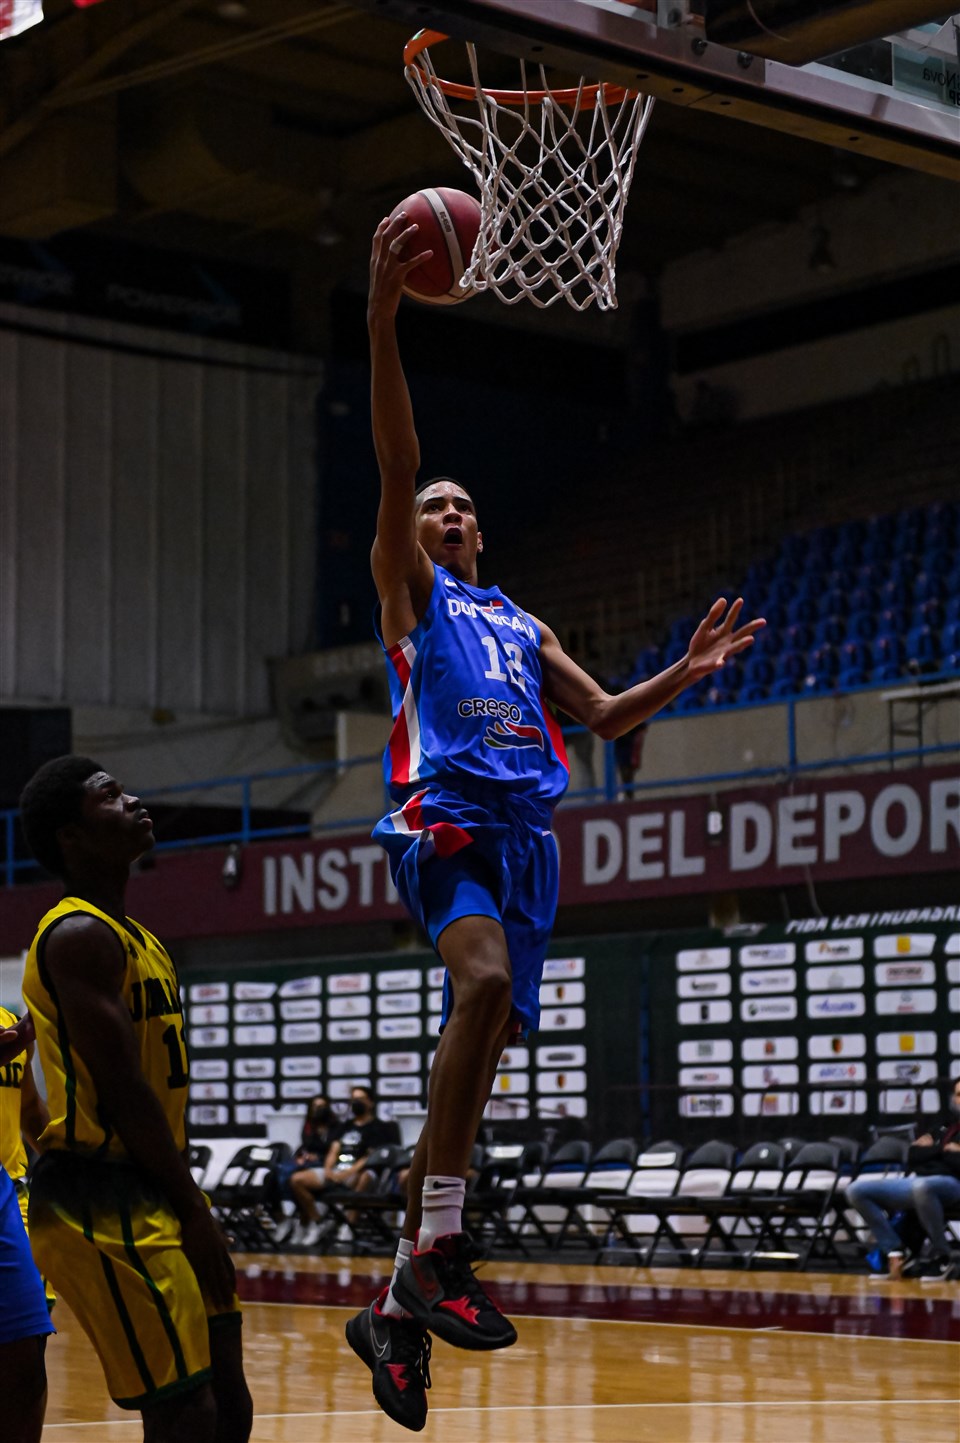 Dominicana avanza a semifinal en el Campeonato Centrobasket U-17